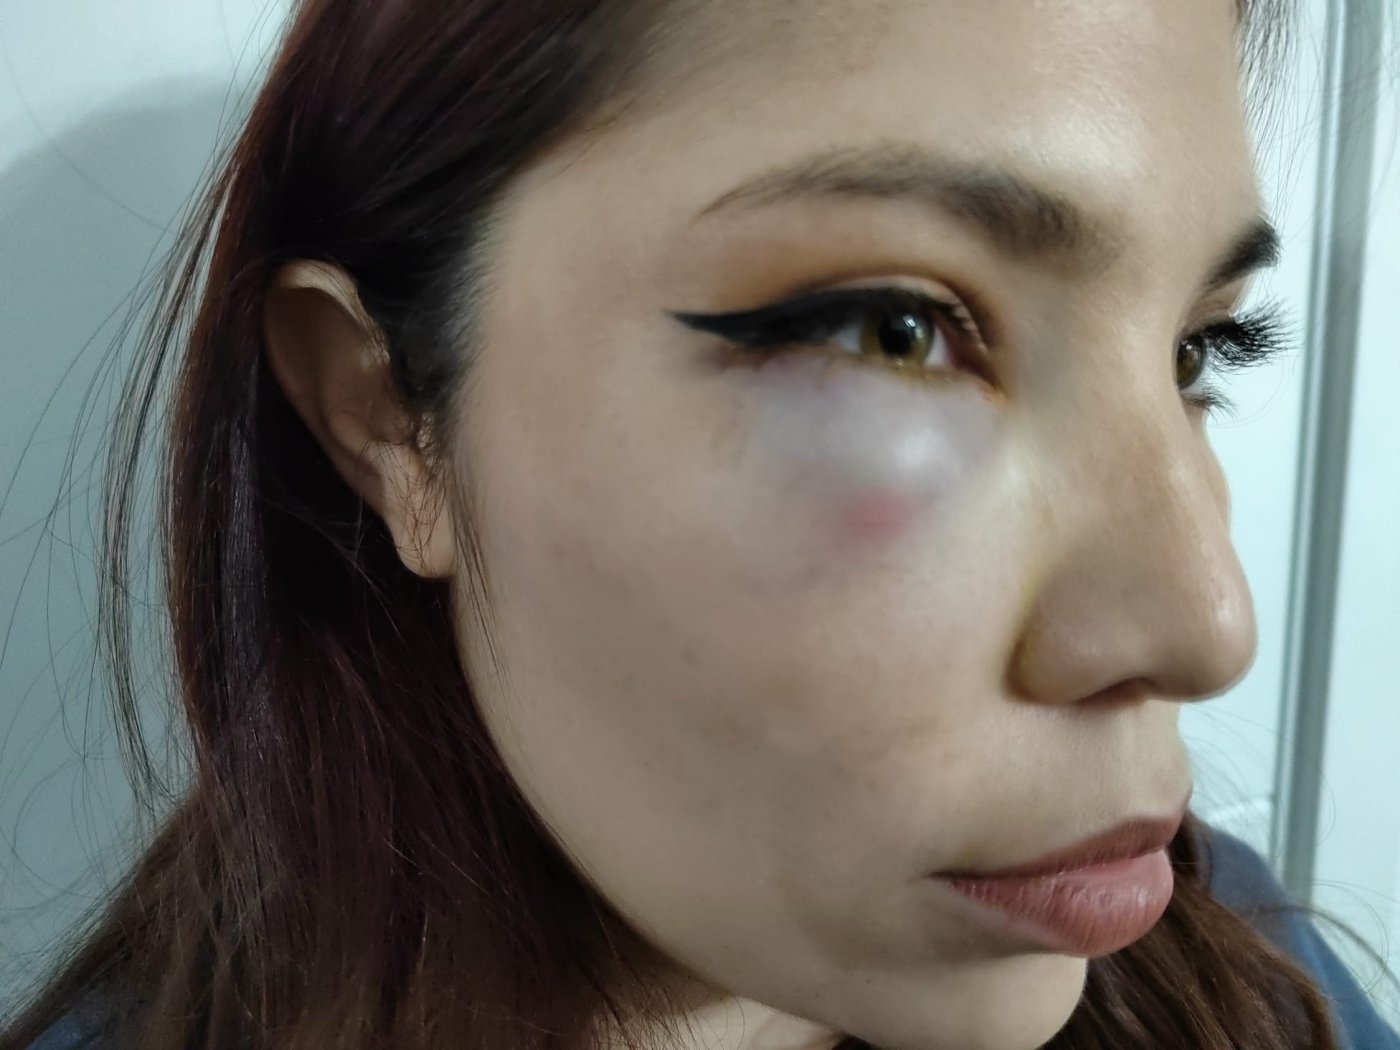 Lesiones sufridas por la joven de 19 años en su ojo derecho.